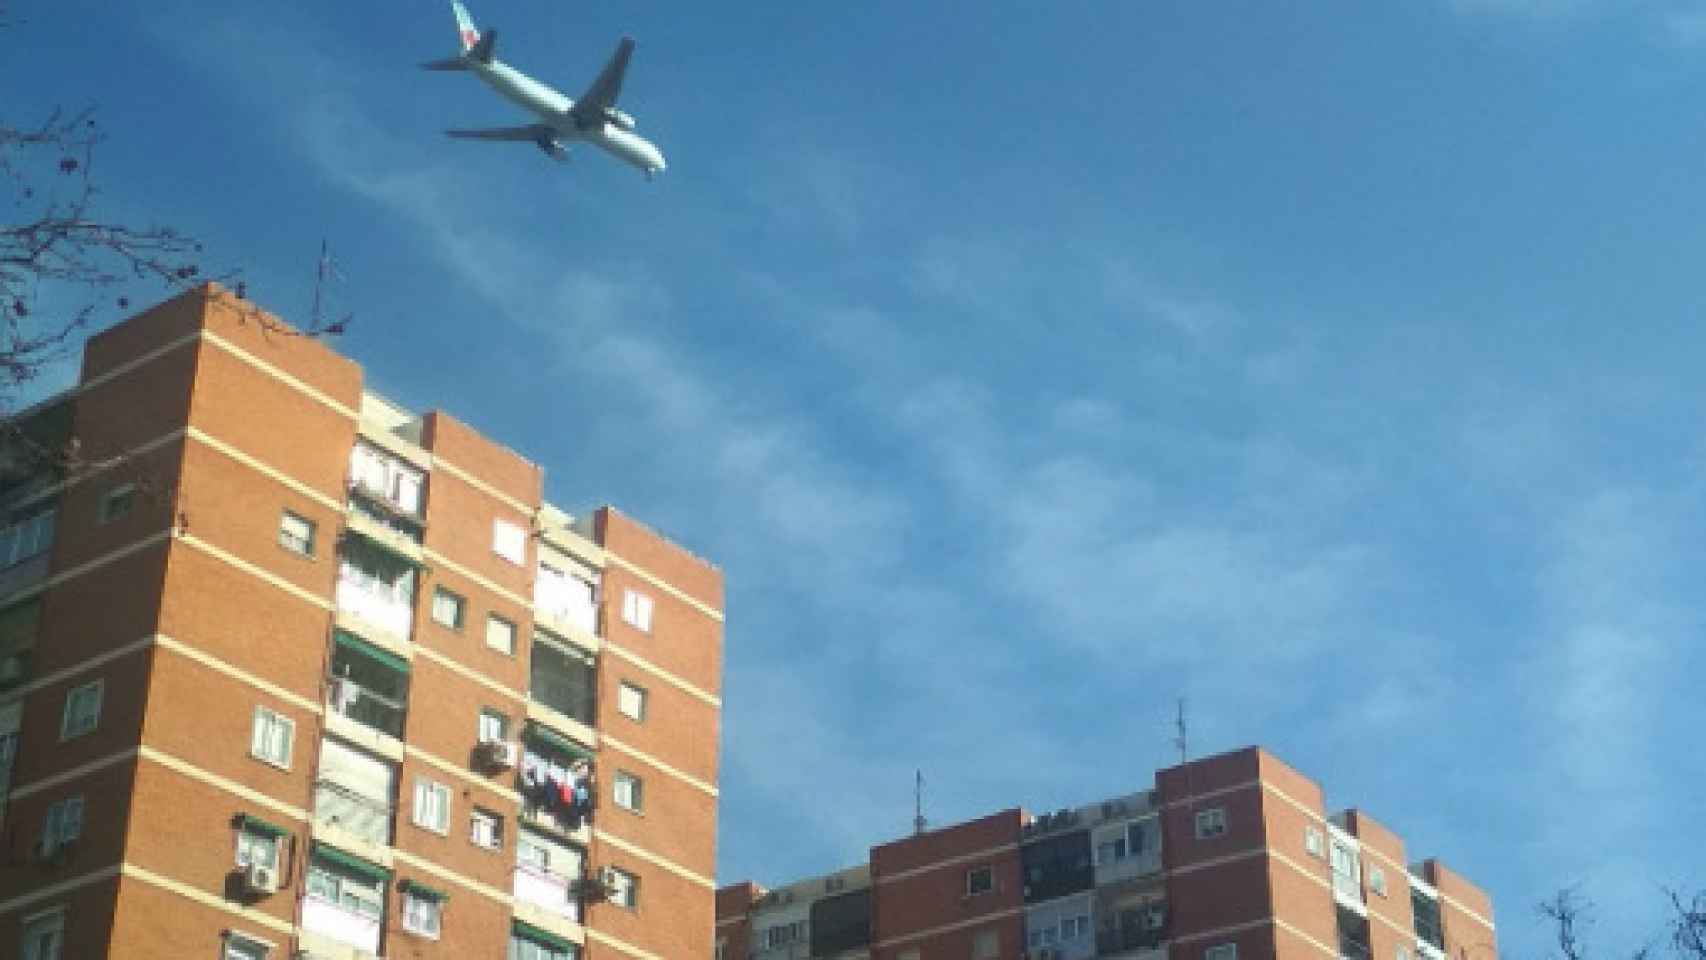 El avión sobrevuela Madrid a menos de 1.000 metros de altura.